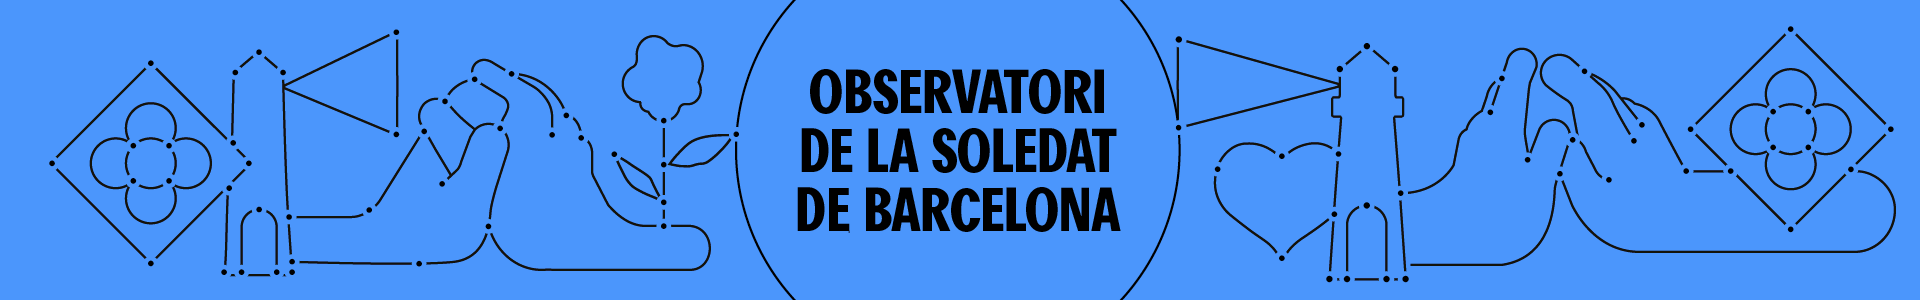 Barcelona contra la soledat